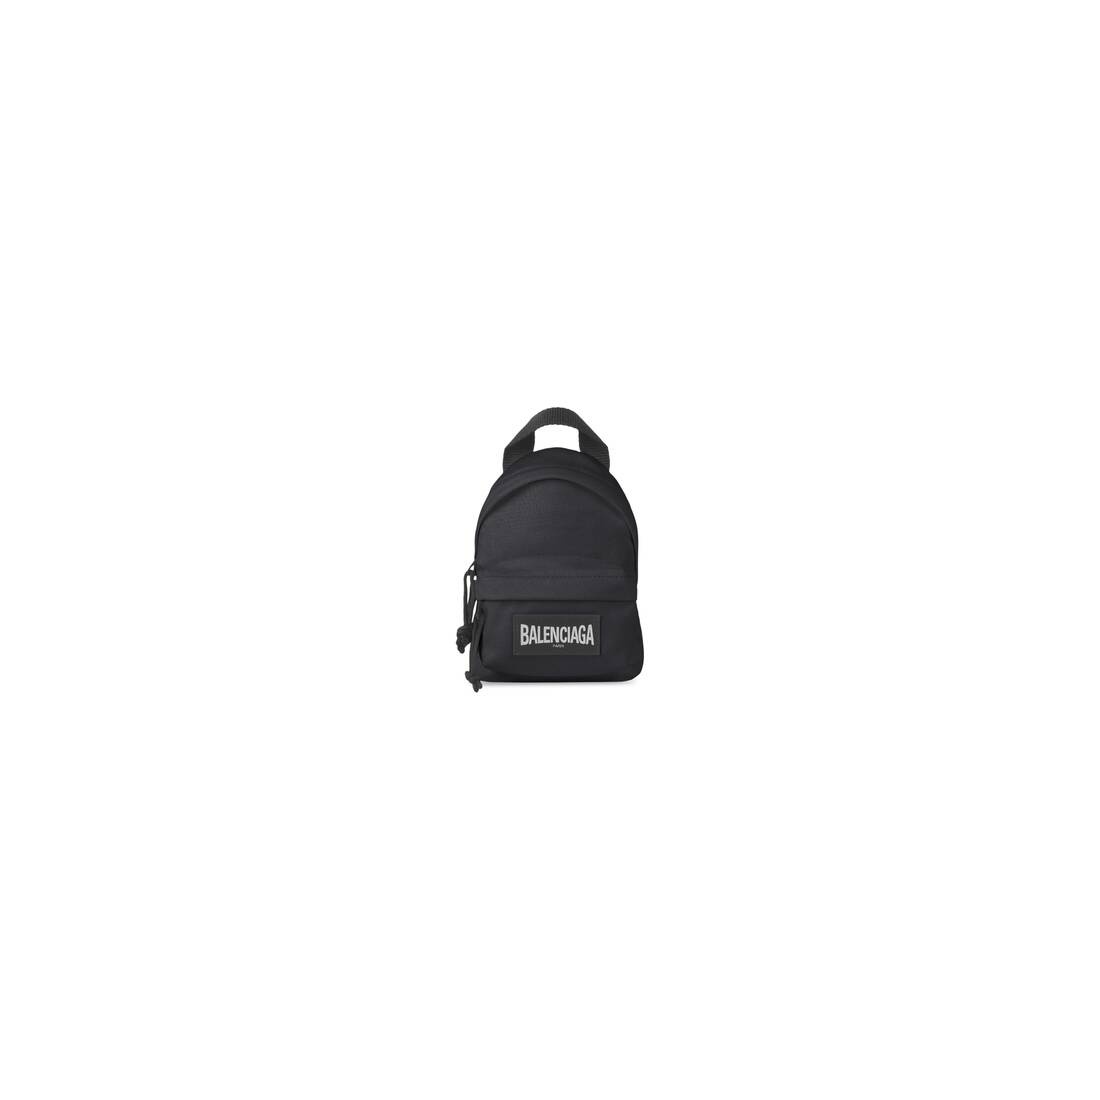 Men's Oversized Mini Backpack in Black - 1